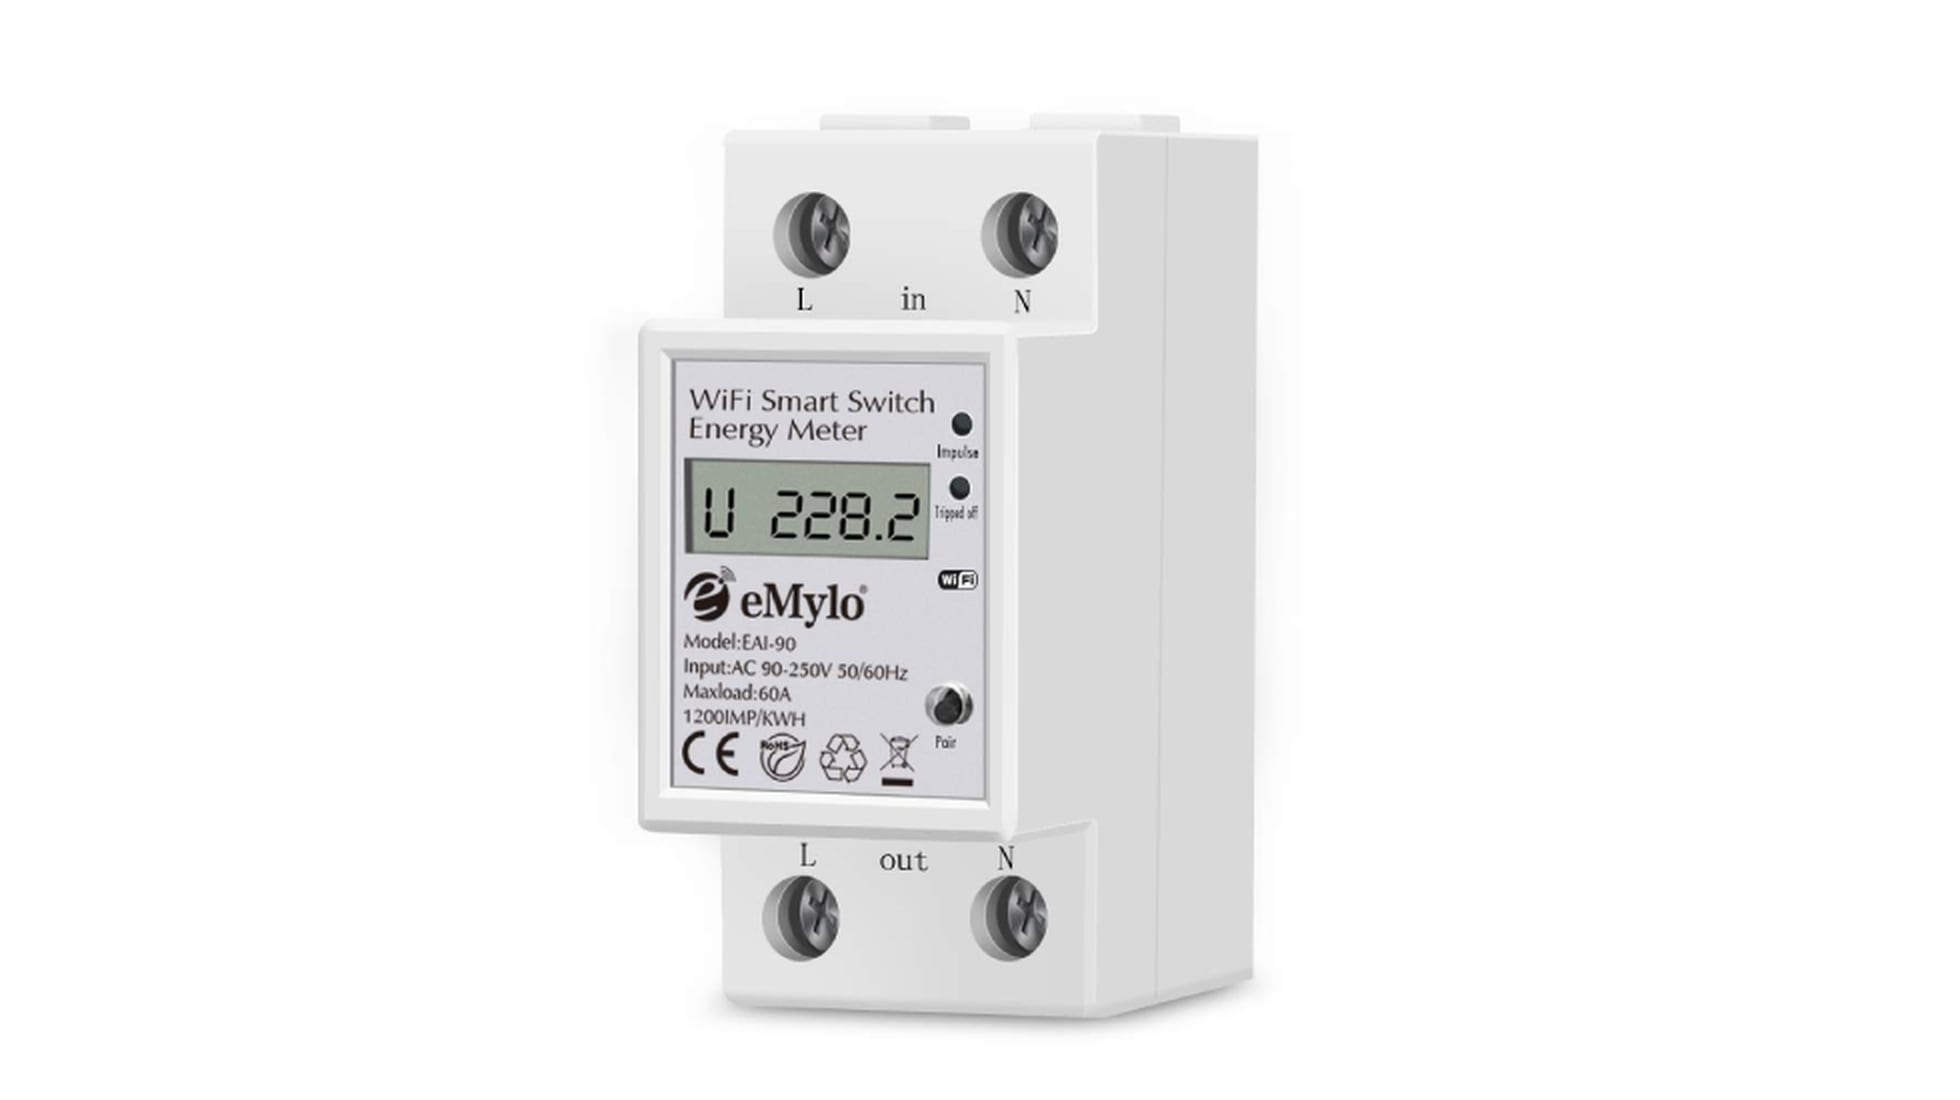 Monitores de electricidad Consumo de energía Energía energía eléctrica Watt Meter 